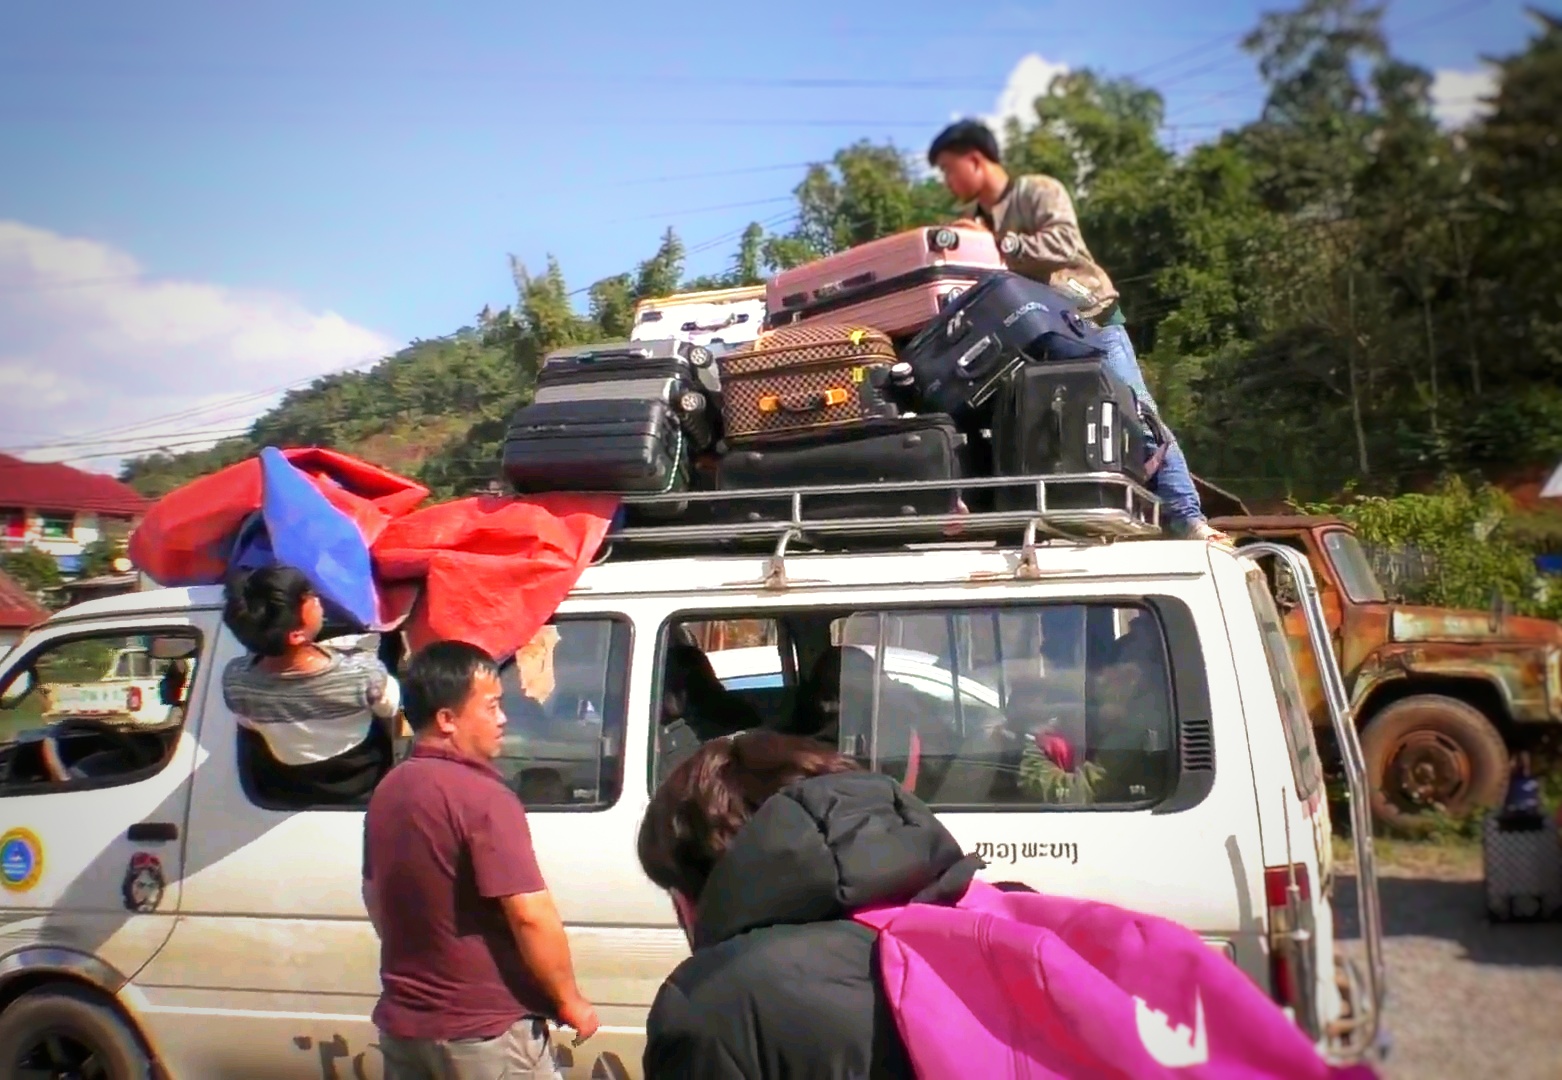 ラオスの国境を越えるトランクを山ほど積んだバス,Buses with piles of trunks crossing the border of Laos